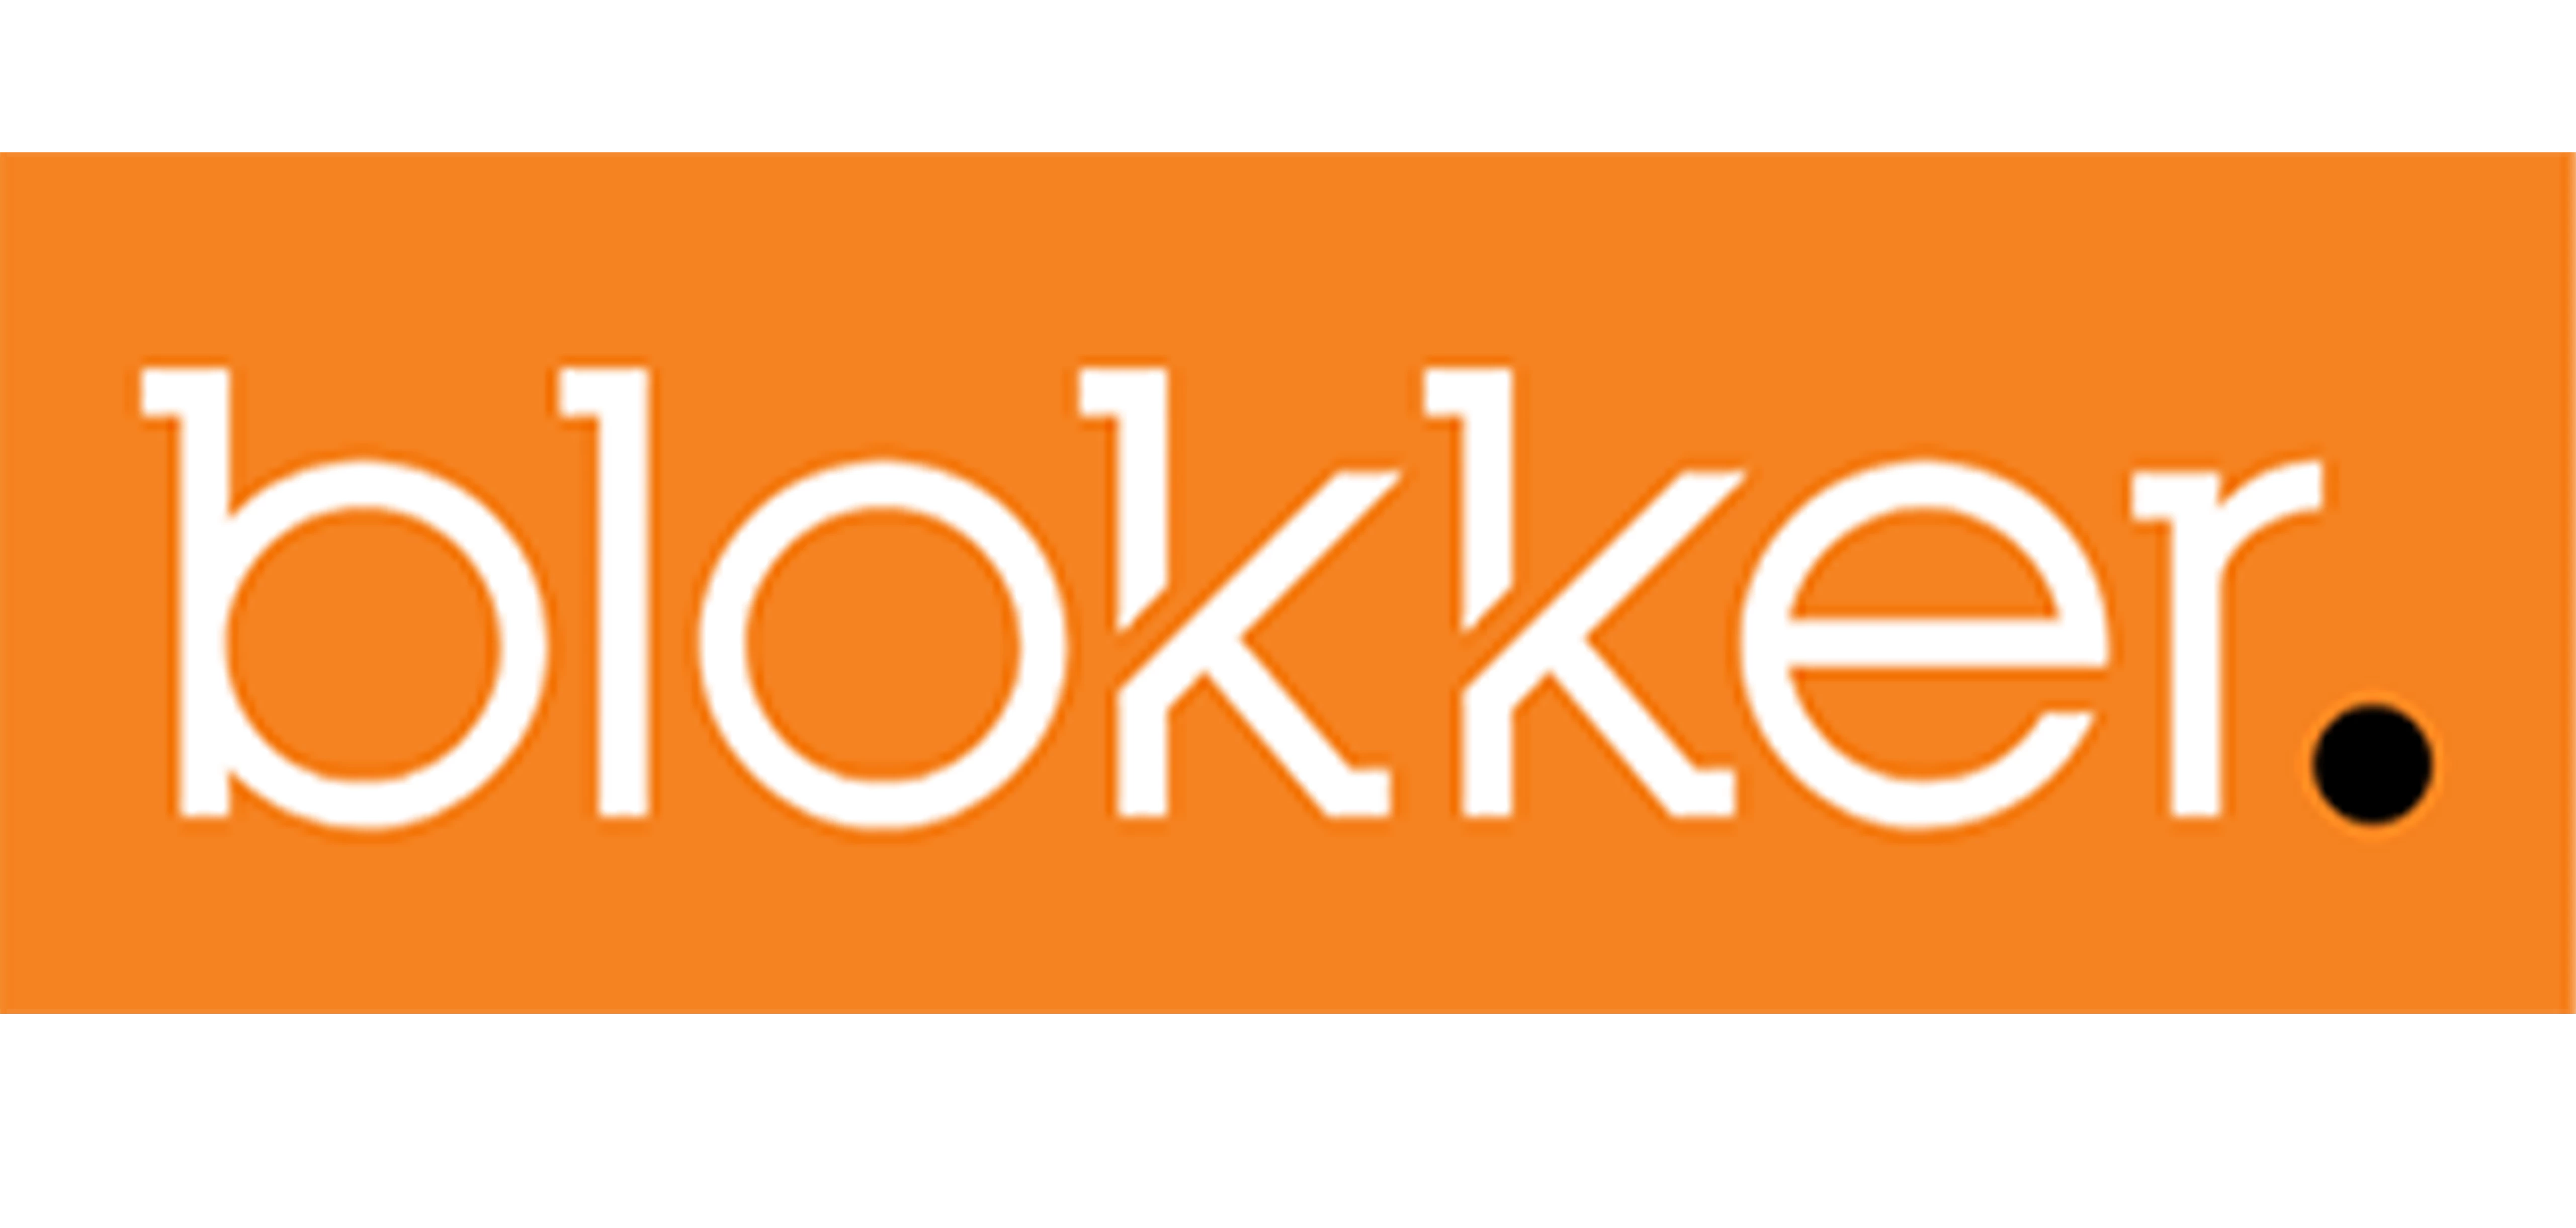 blokker logo oranje